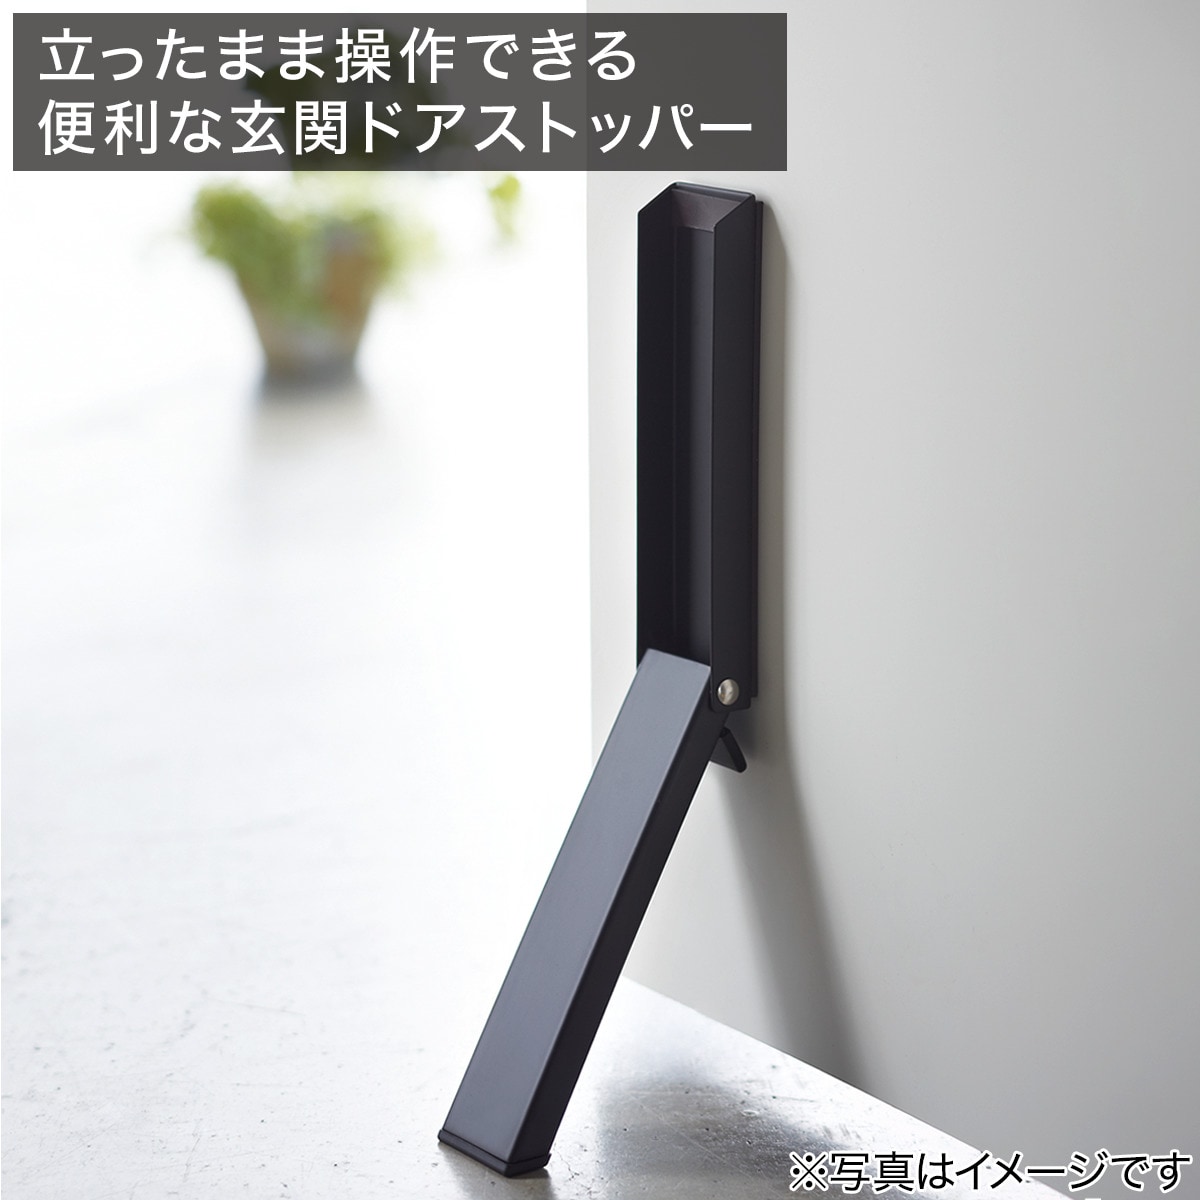 マグネットドアストッパー(2487 ブラック)通販 ニトリネット【公式】 家具・インテリア通販